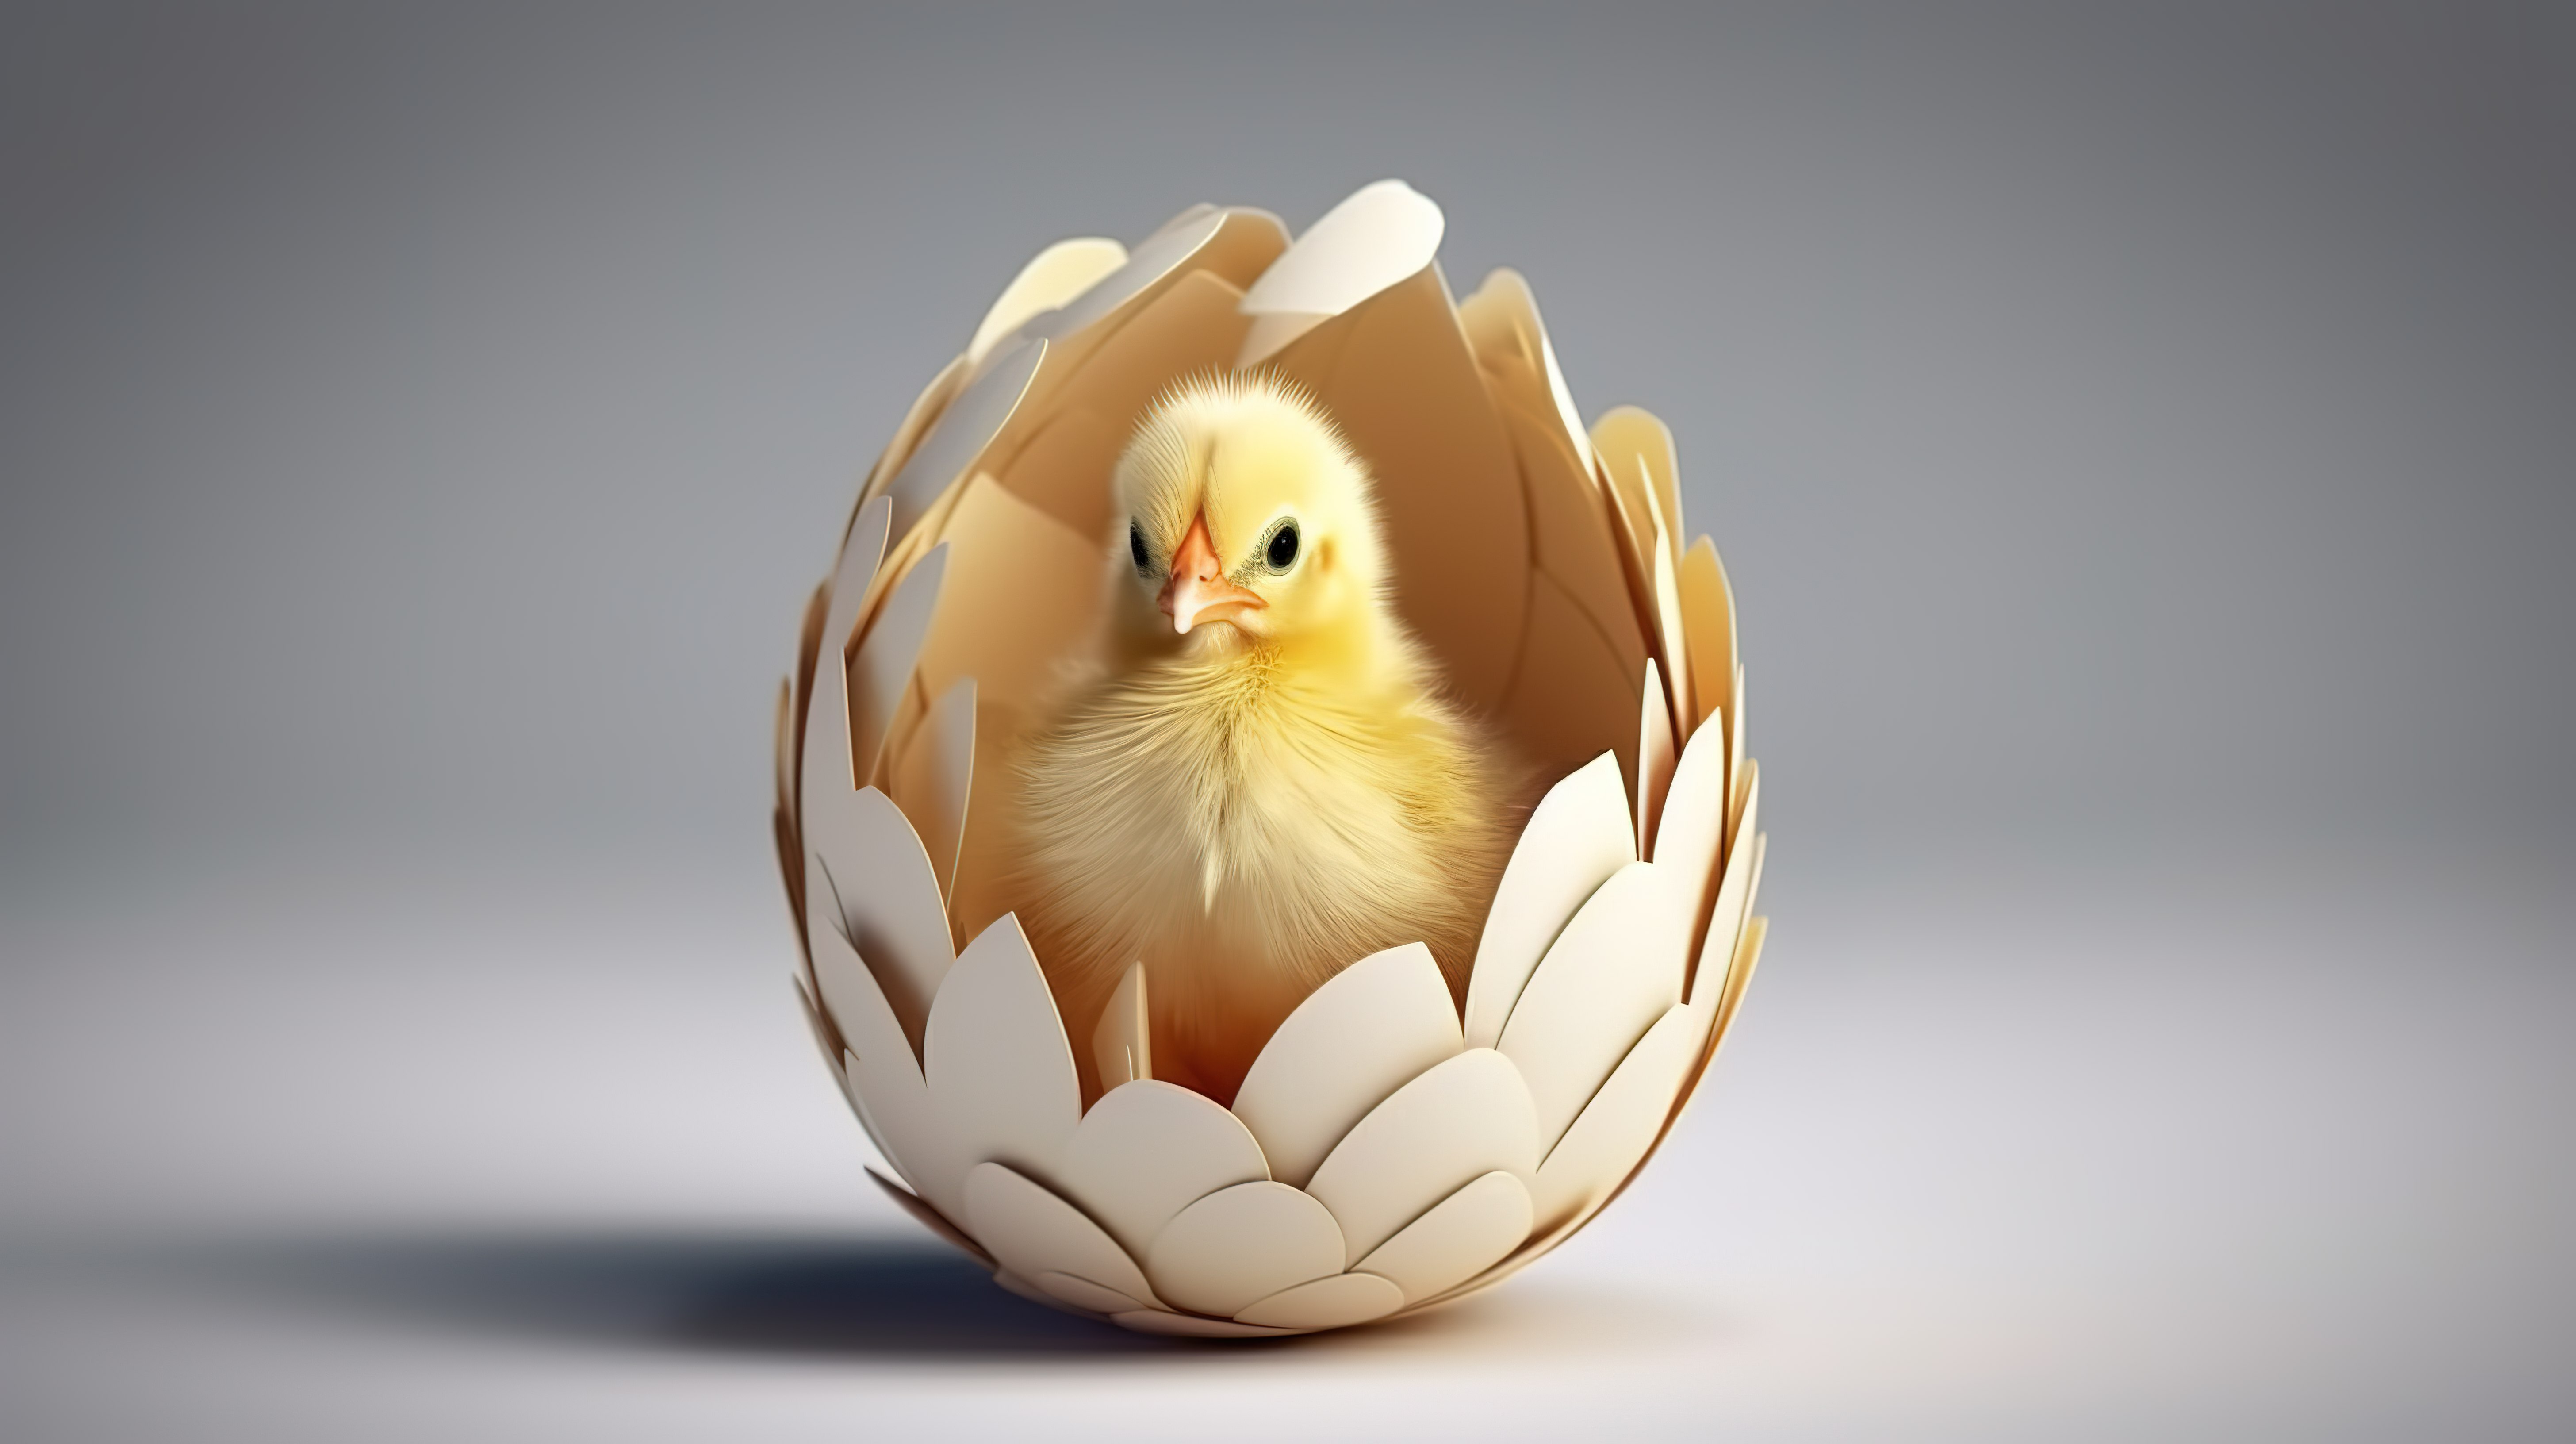 刚孵出的鸡从壳中冒出来的 3D 概念设计图像图片